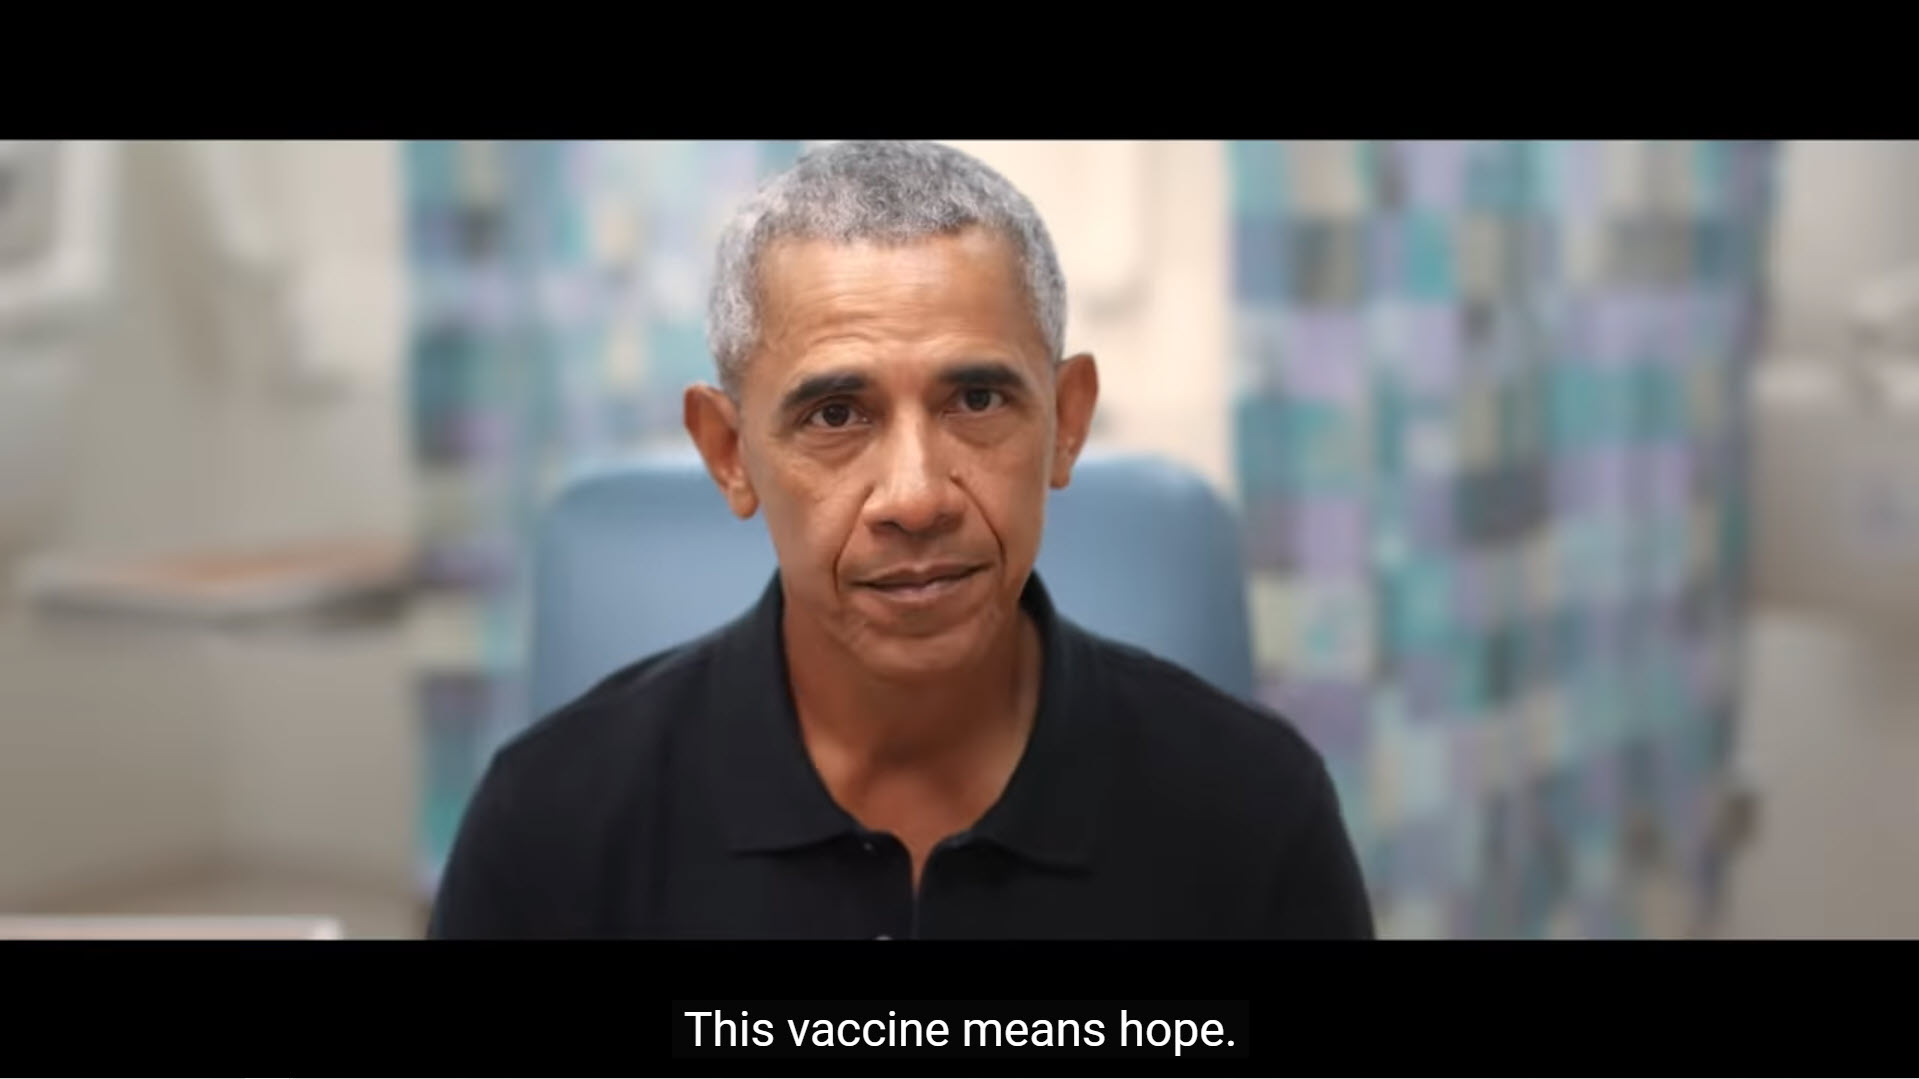 เหล่าอดีตประธานาธิบดีสหรัฐฯ ร่วมโฆษณาสนับสนุนการฉีดวัคซีน COVID-19